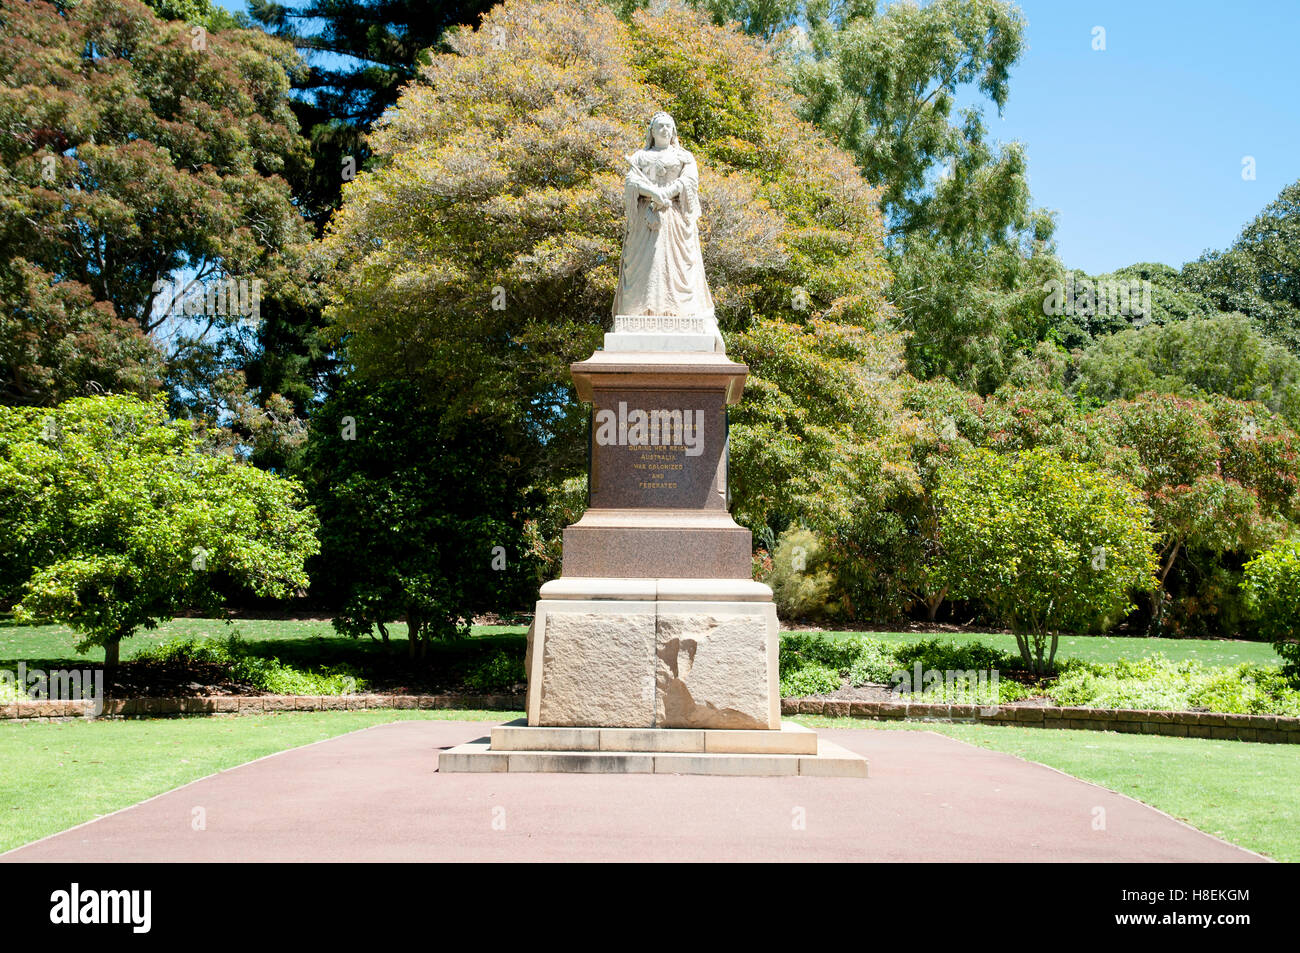 Queen Victoria Statue - Perth - Australia Stock Photo